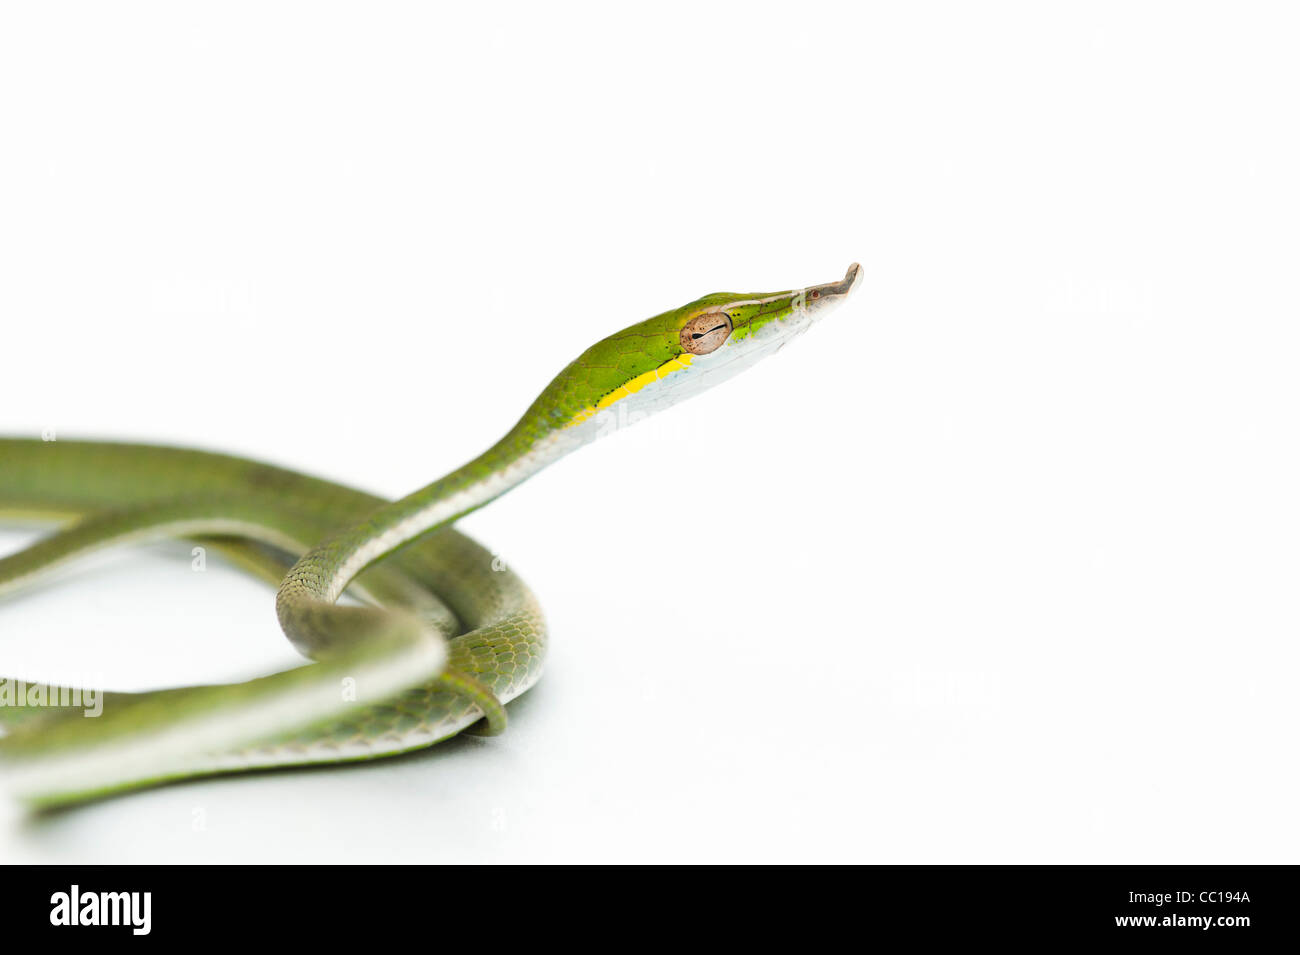 Ahaetulla nasuta . Serpent de vigne verte juvénile sur fond blanc Banque D'Images